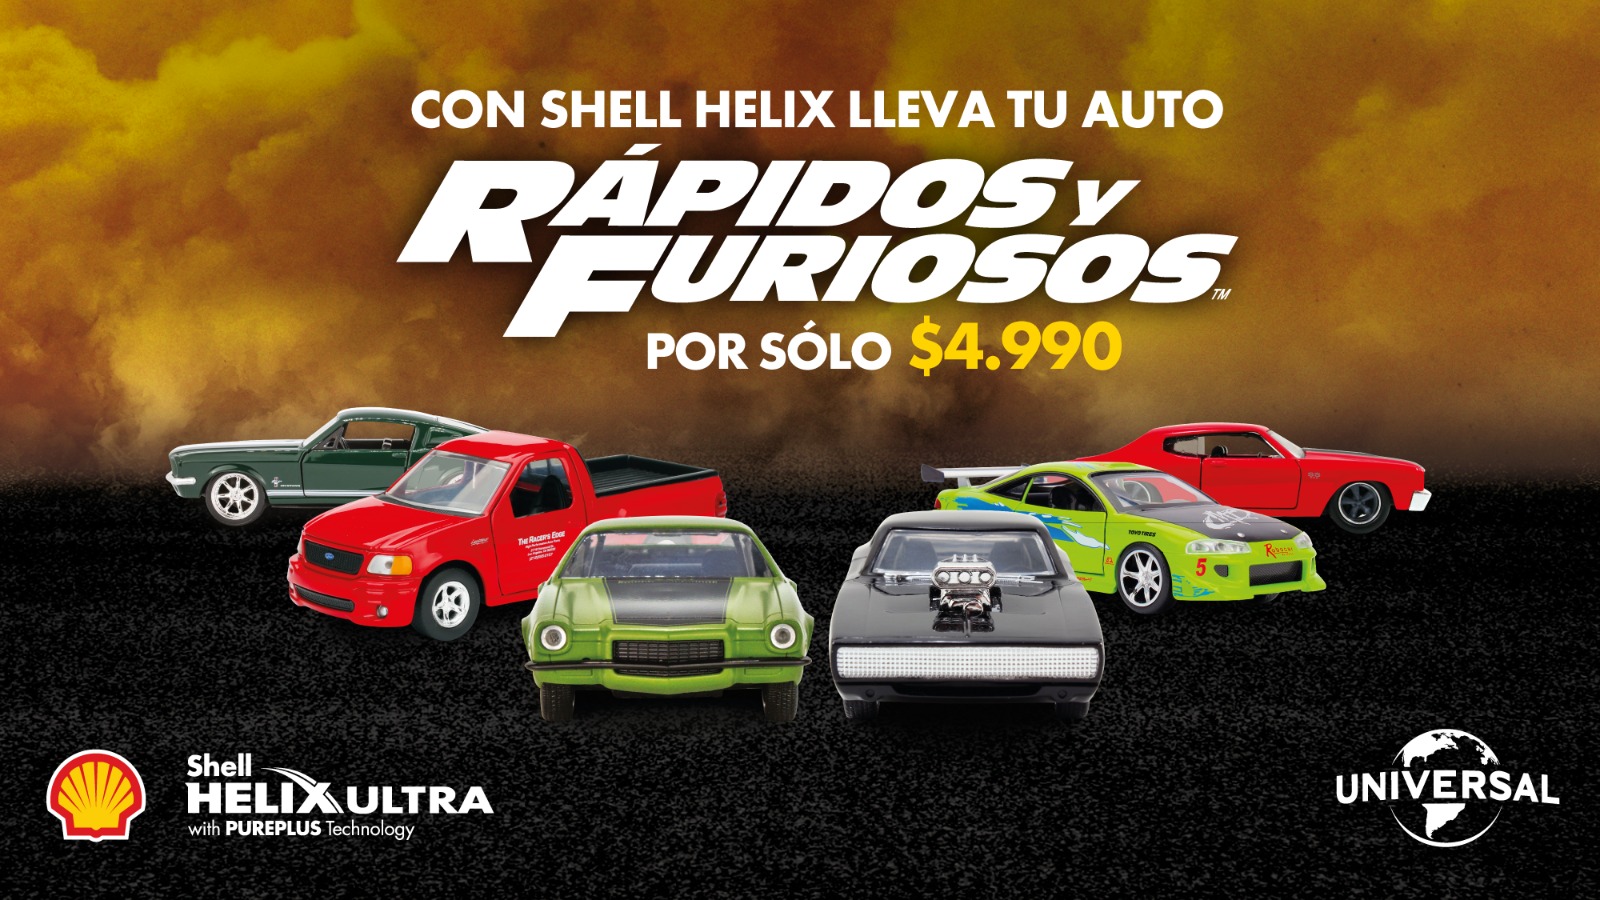 Shell Helix da a conocer promoción para obtener autos a escala de la saga Rápido y Furioso